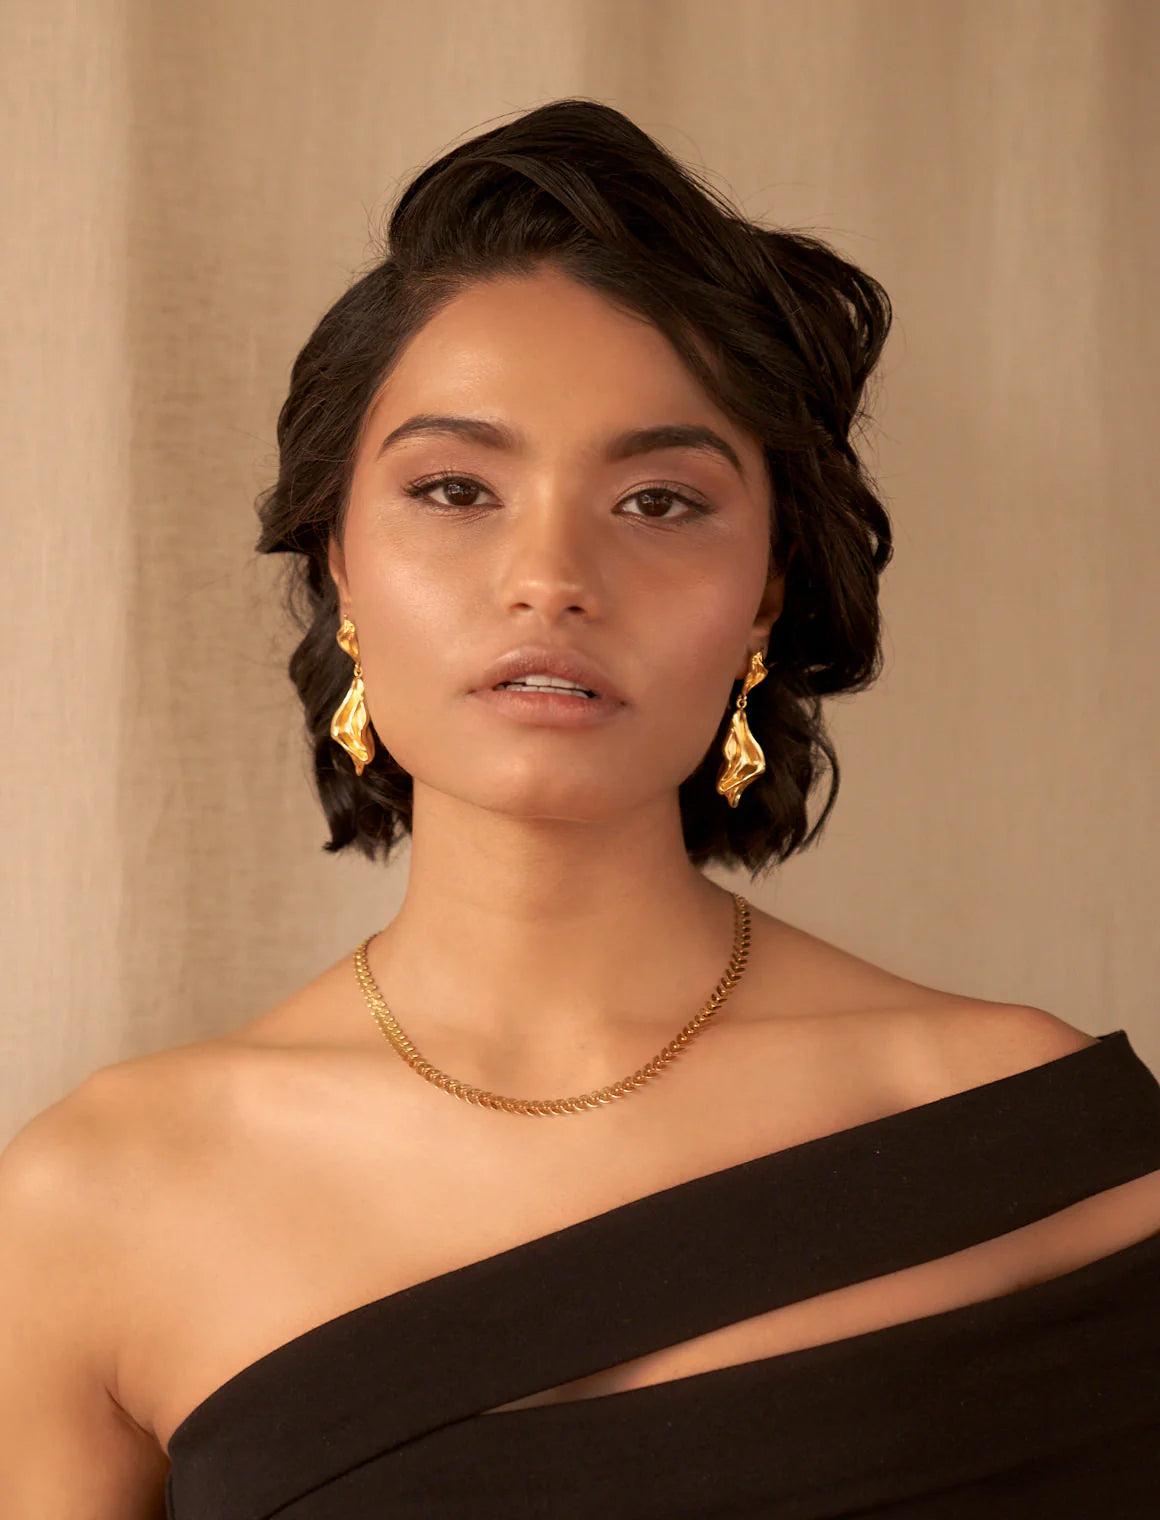 Dinari Jewels - Aphrodite Gold Earrings